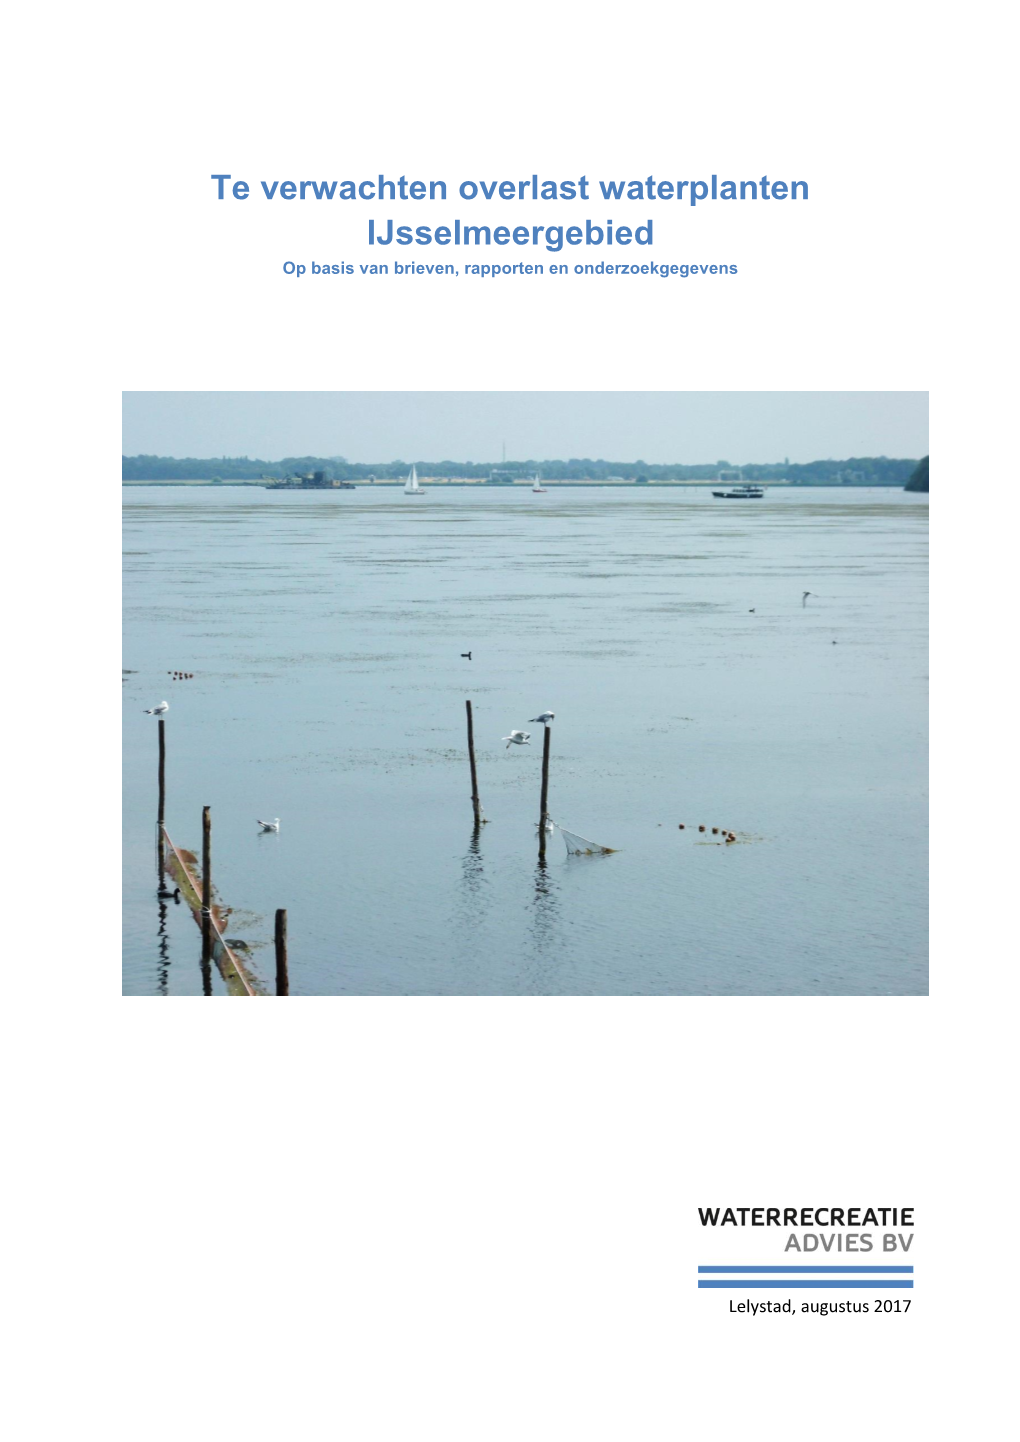 Te Verwachten Overlast Waterplanten Ijsselmeergebied Op Basis Van Brieven, Rapporten En Onderzoekgegevens